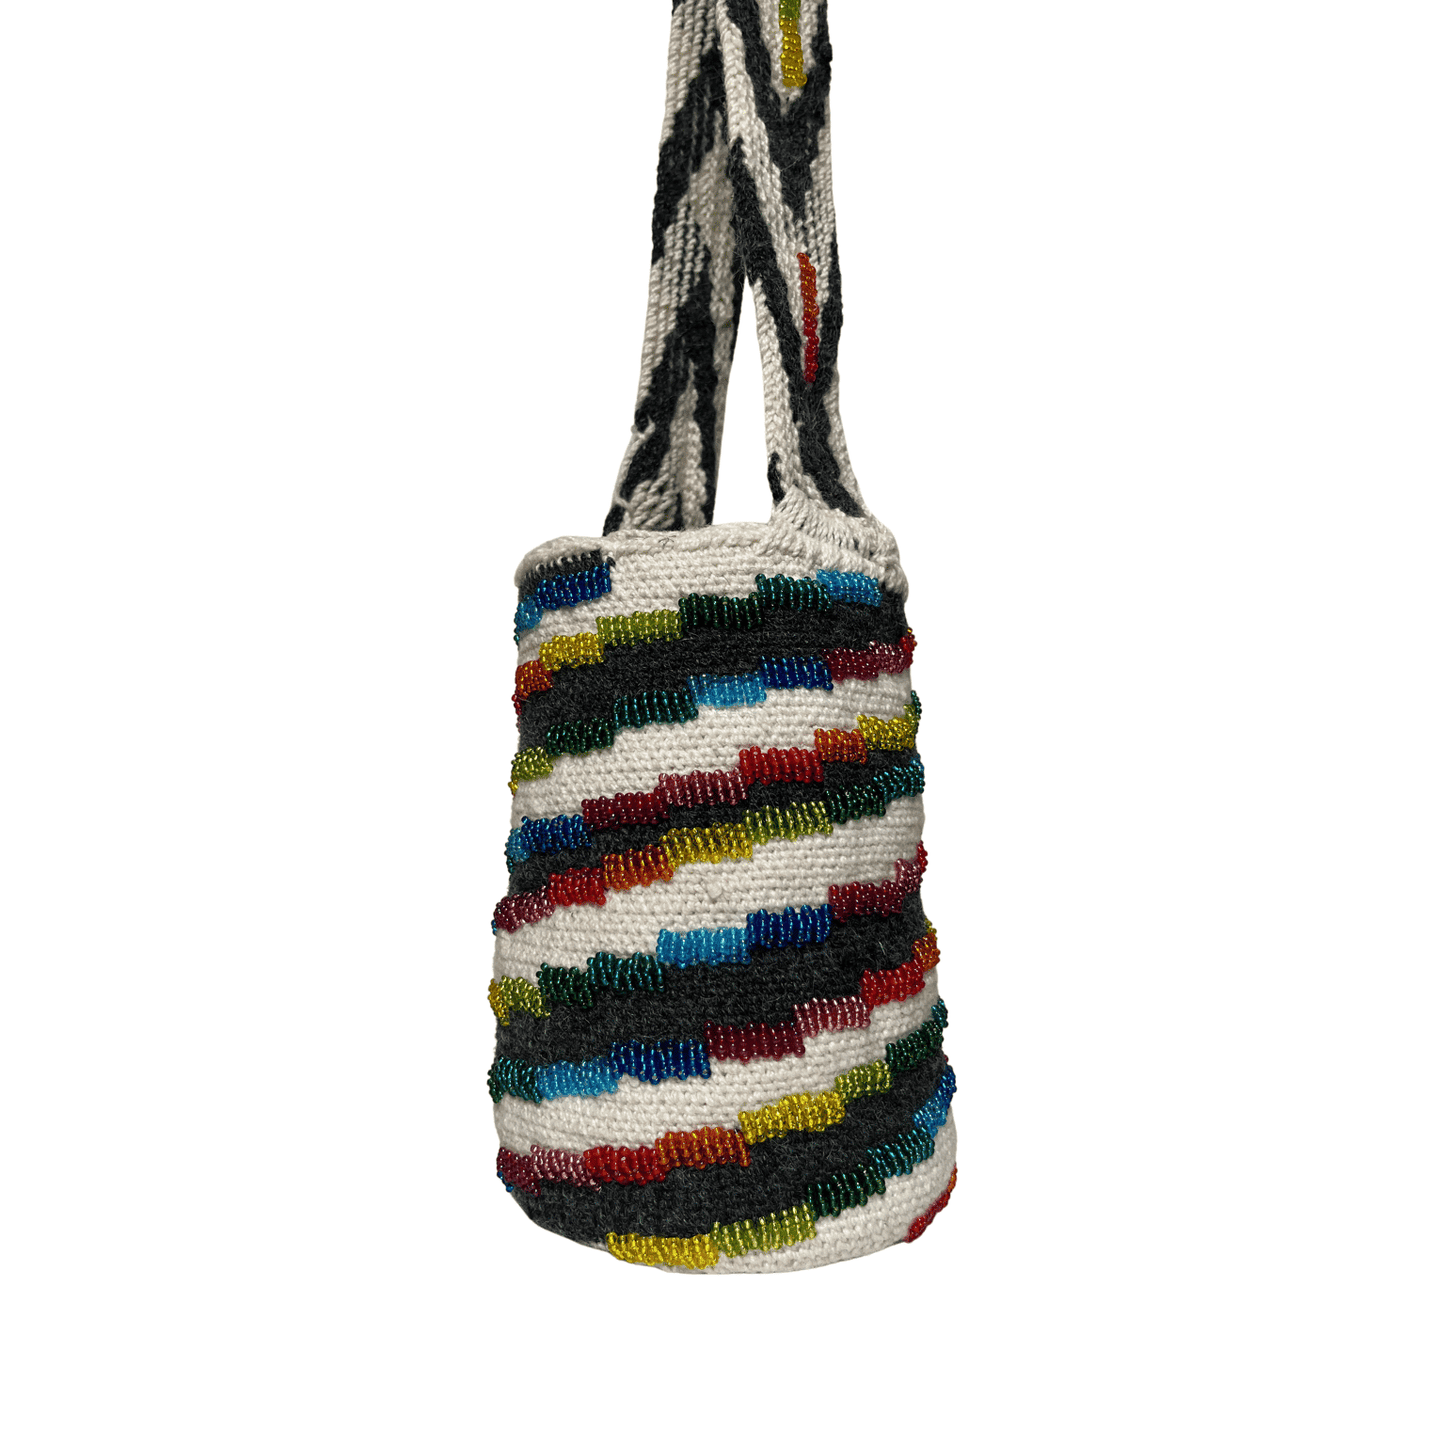 Mochila kankuama artesanal para mujer diseño Caracol de Colores